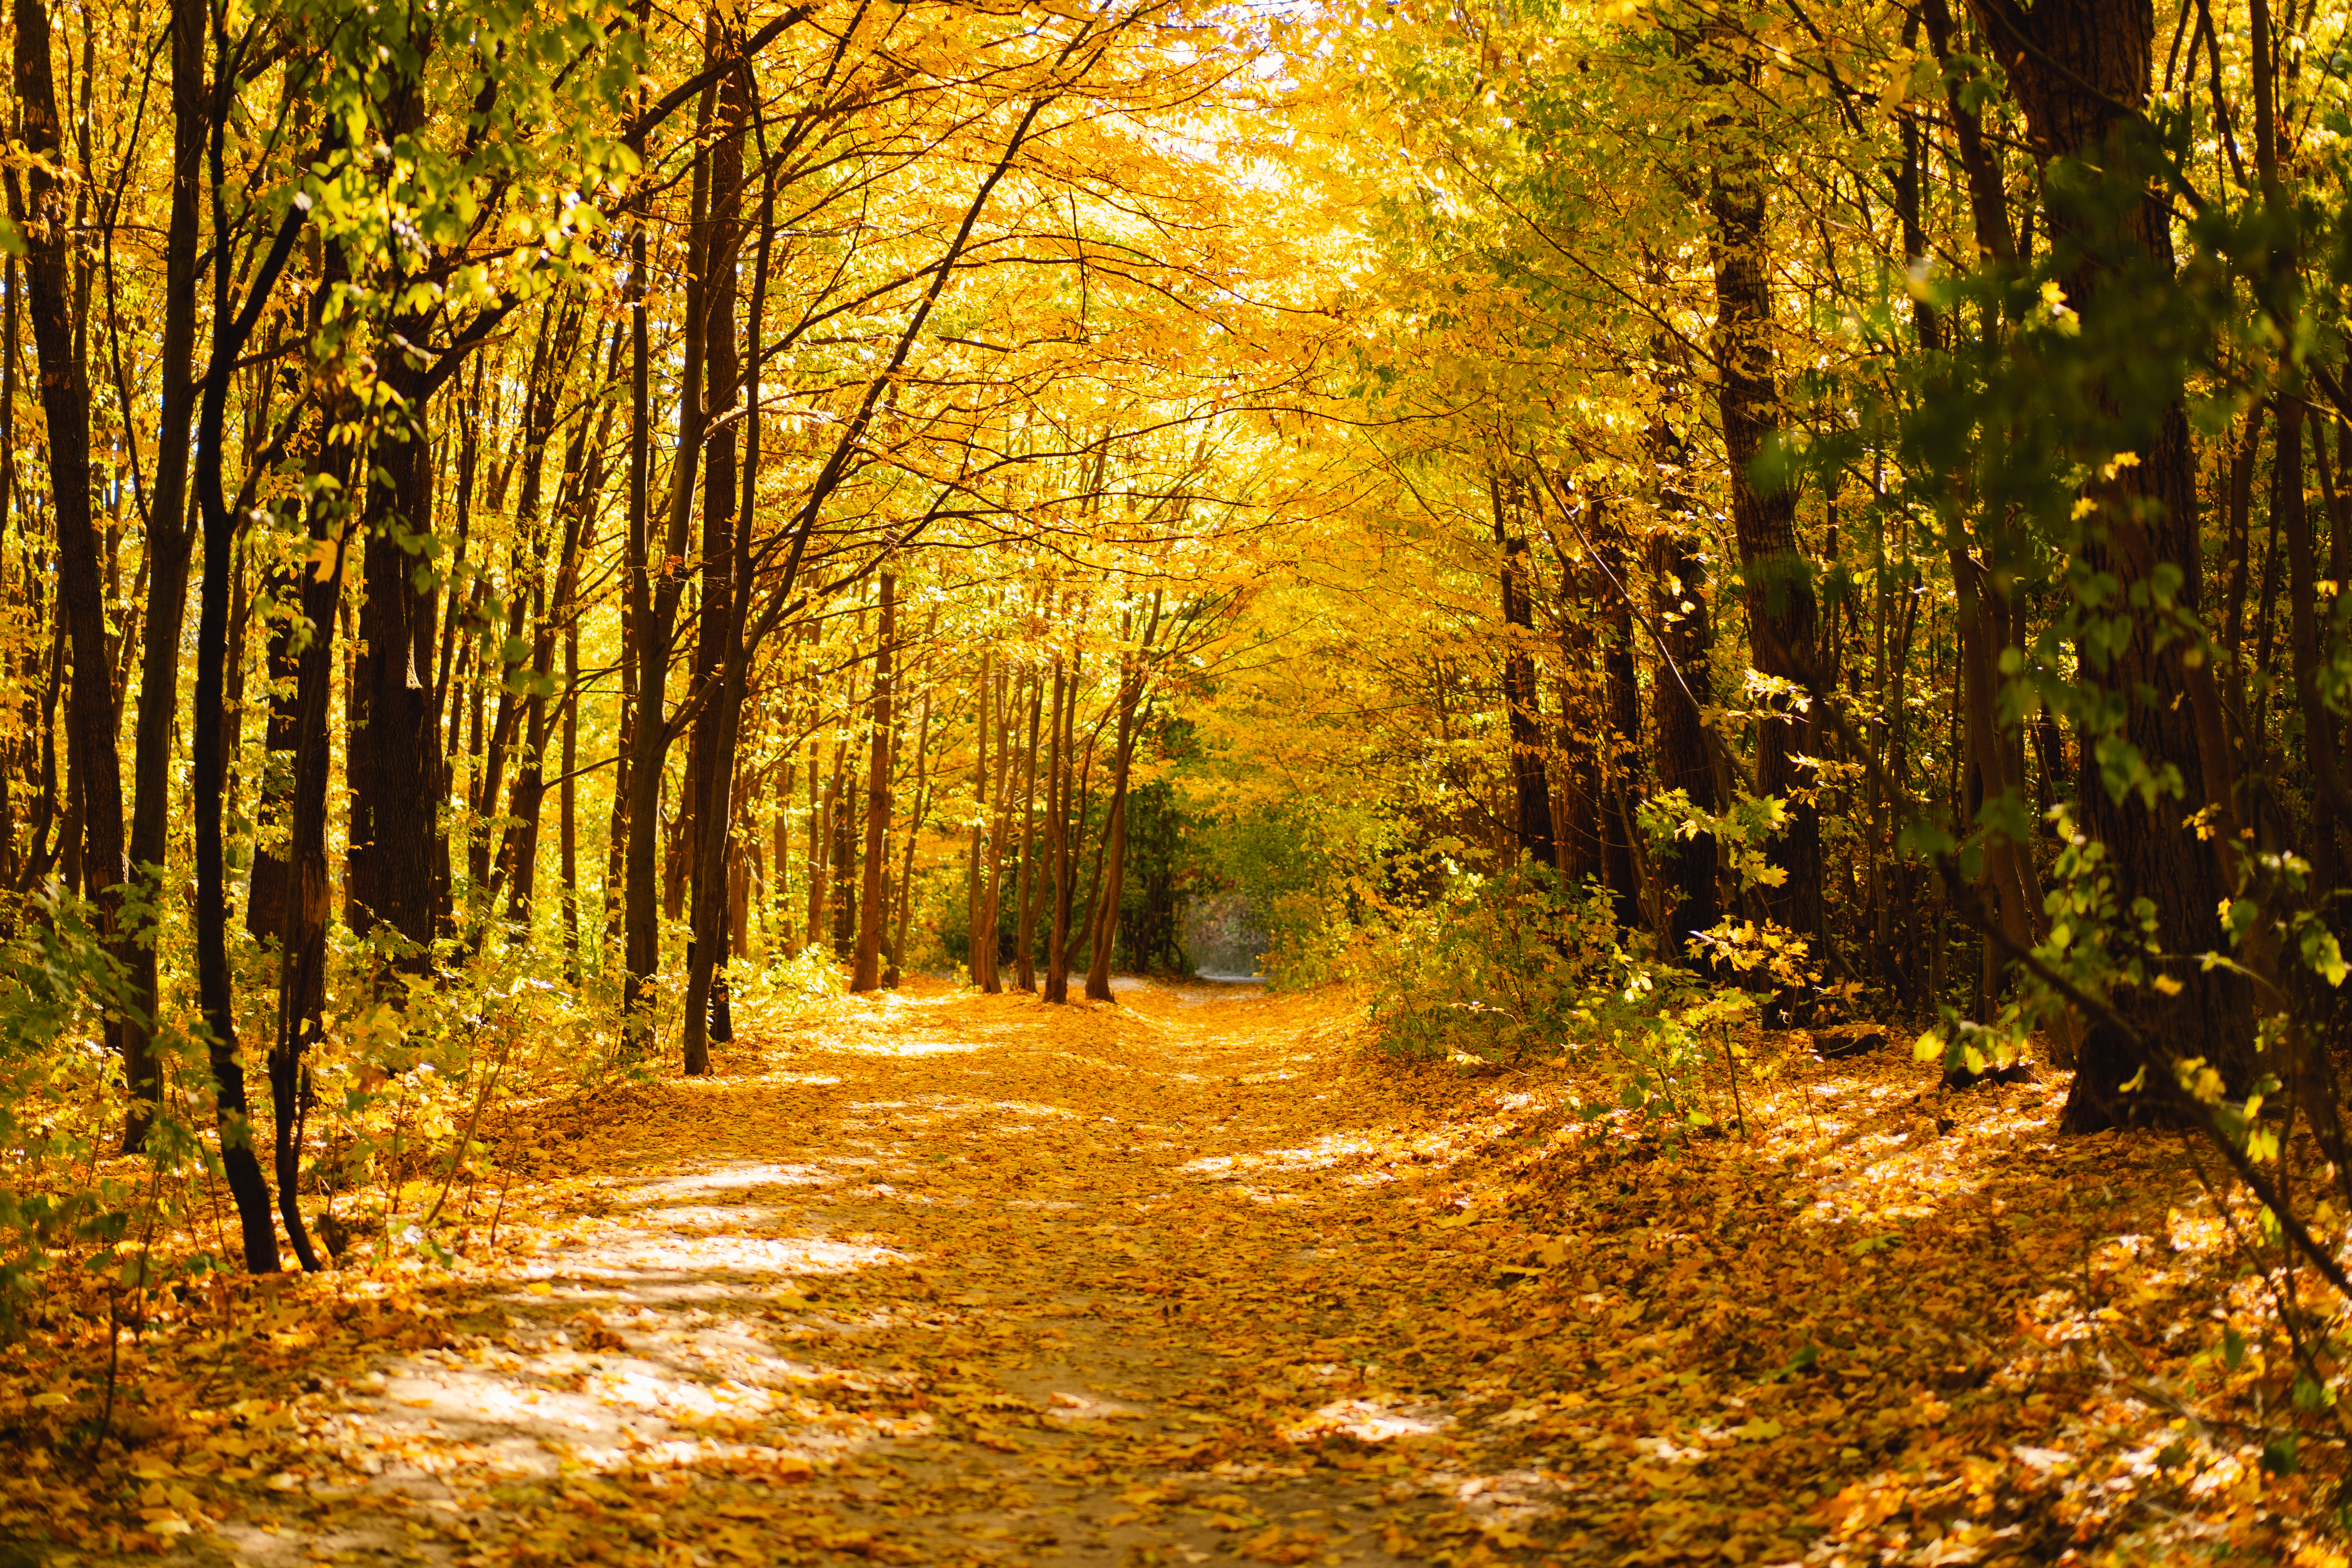 forest-autumn-in-sunny-autumn-weather-autumn-land-2021-10-21-16-48-12-